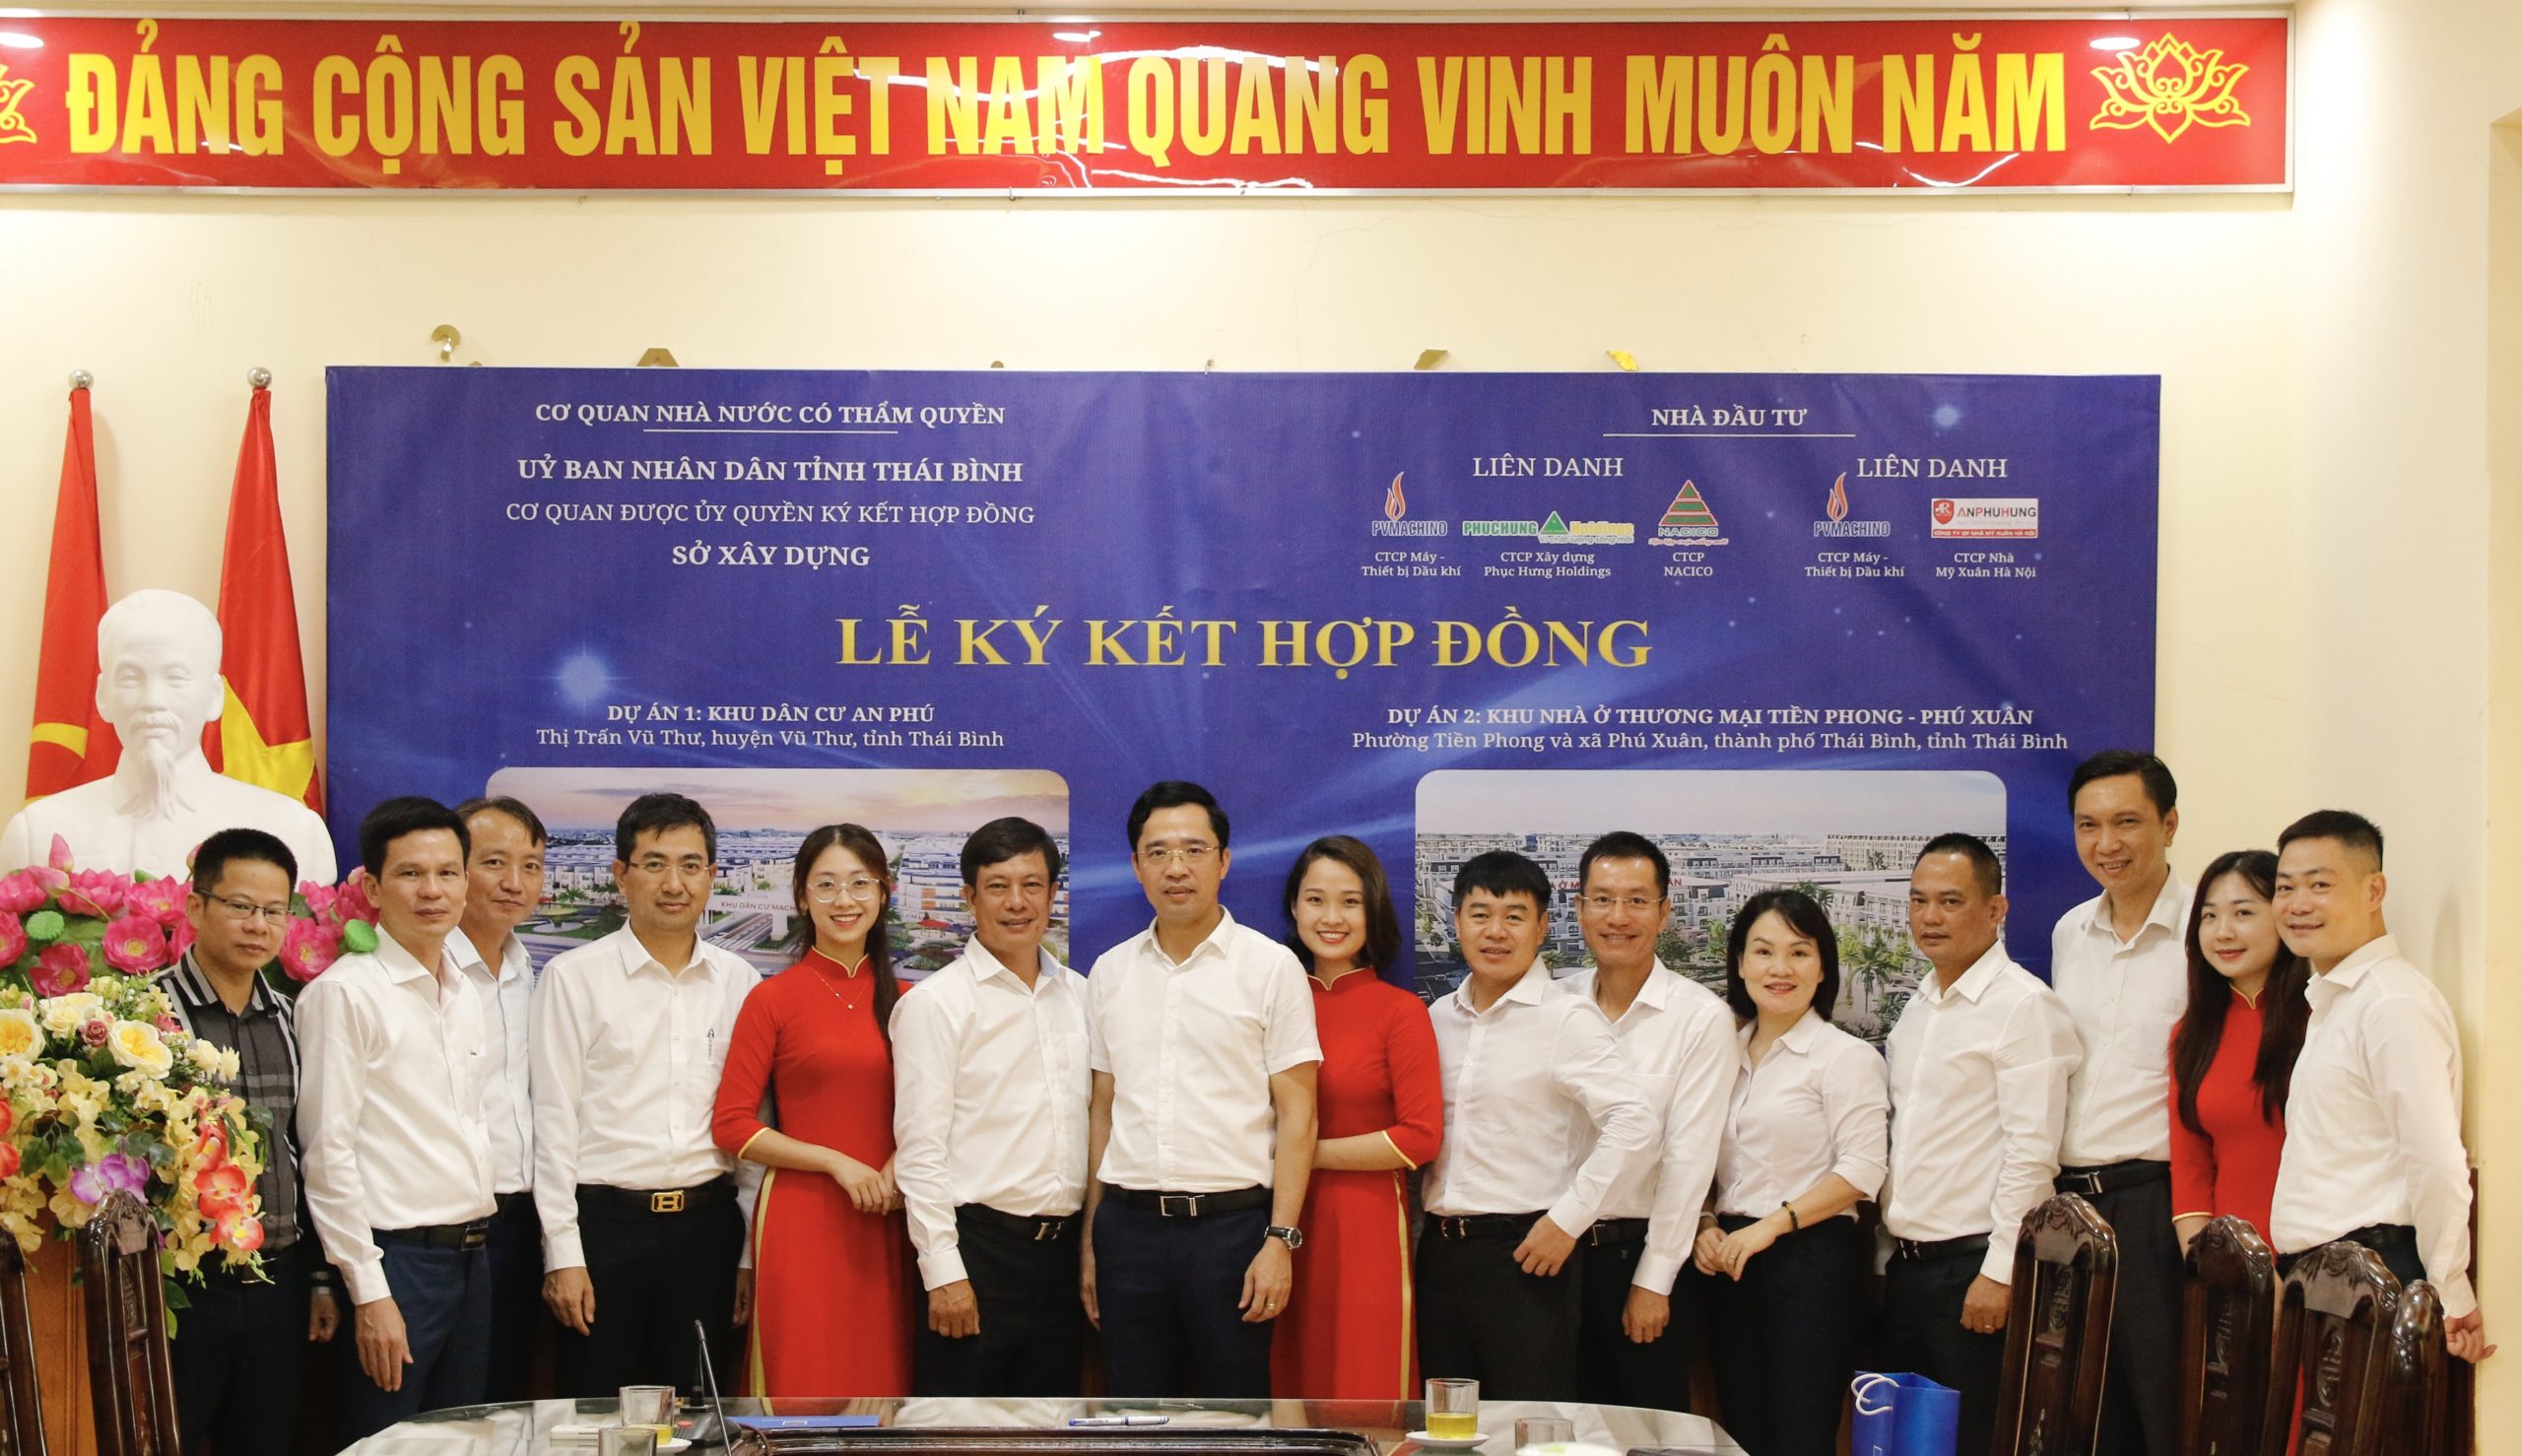 Lễ ký kết Hợp đồng hợp tác đầu tư Dự án nhà ở thương mại Khu dân cư An Phú và Dự án nhà ở thương mại Tiền Phong – Phú Xuân tại tỉnh Thái Bình